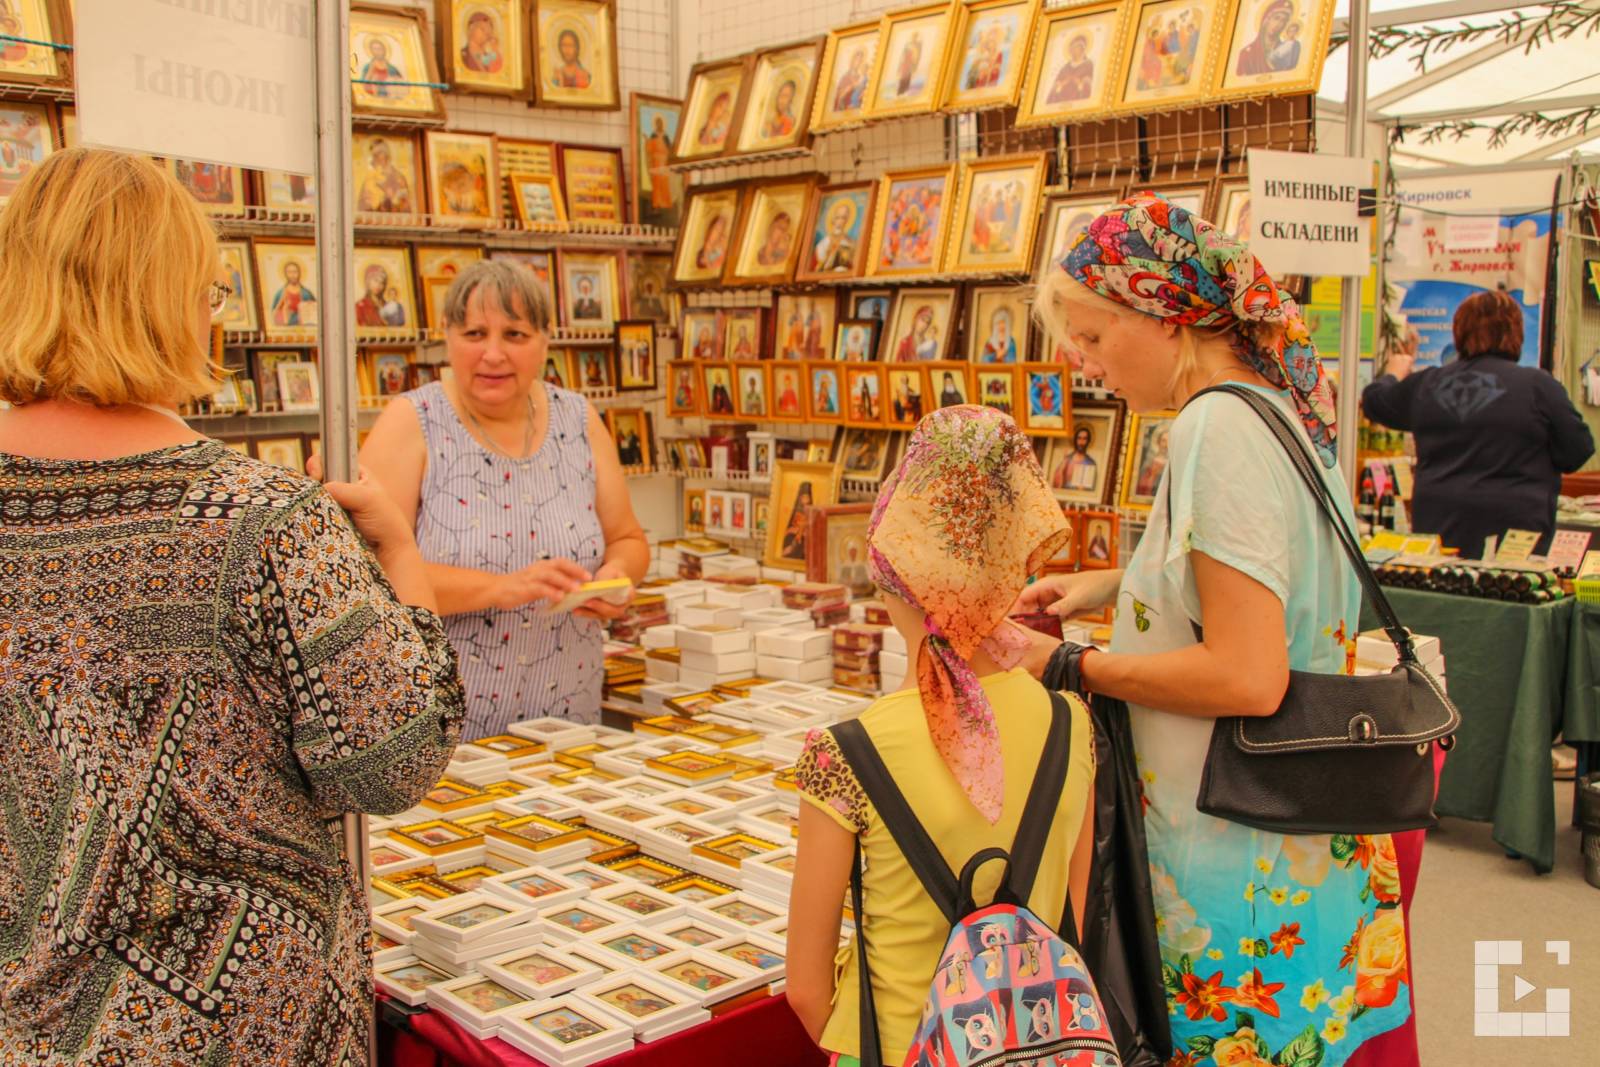 Видеорепортаж о православной выставке-ярмарке в Михайловке